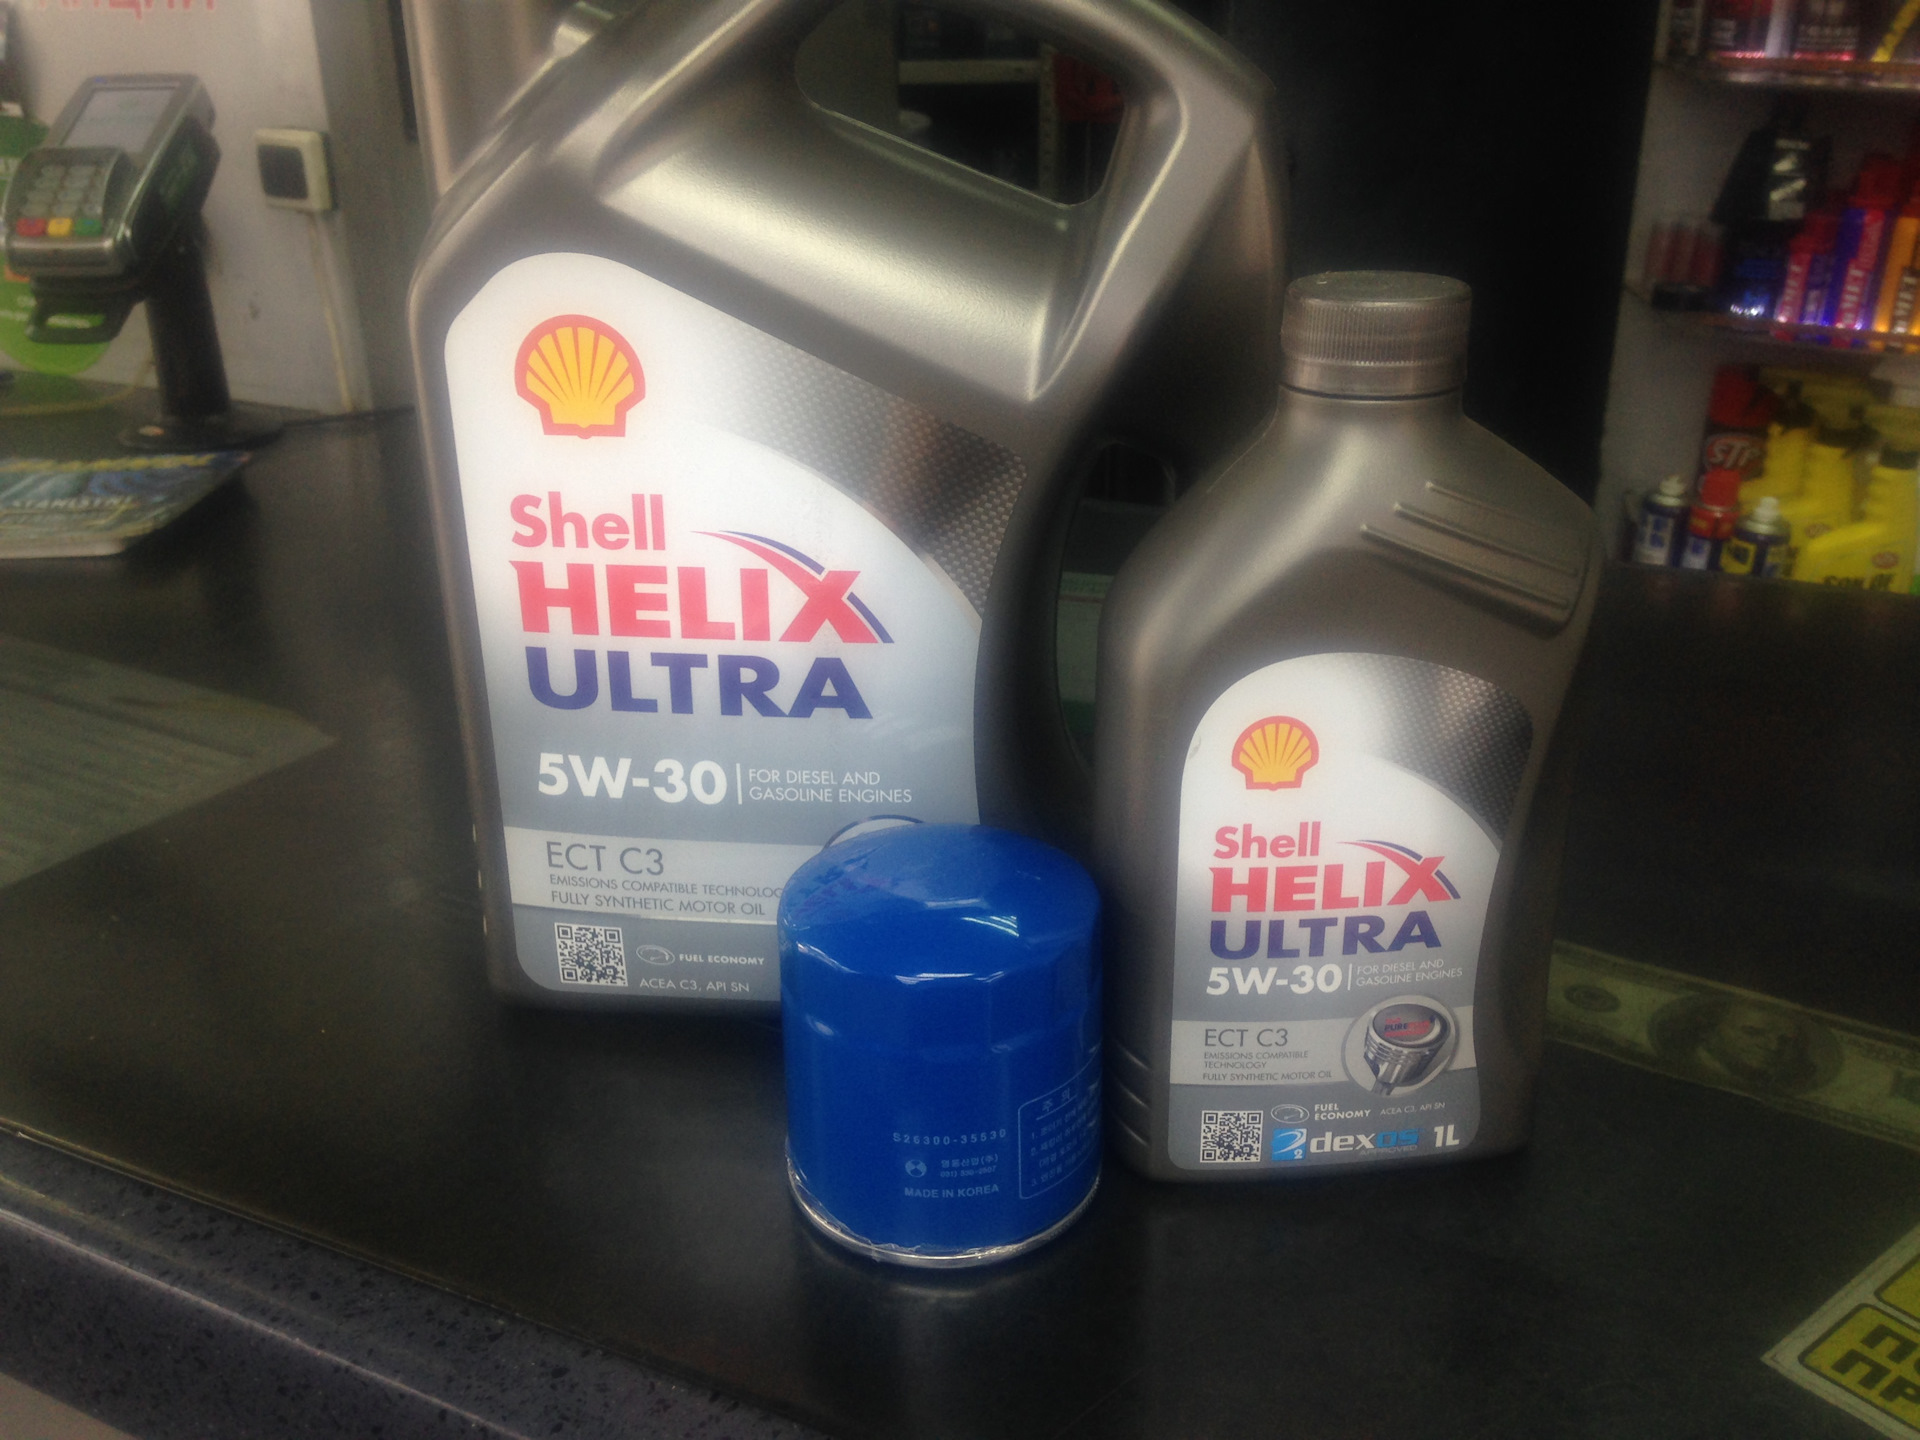 Масло хендай ах35. Масло в Hyundai ix35 Shell. Hyundai ix35 масло в двигатель бензин 2.0. Масло для Хендай ix35 2.0 бензин полный привод. Масло в двигатель Хендай ix35 2.0 2012.